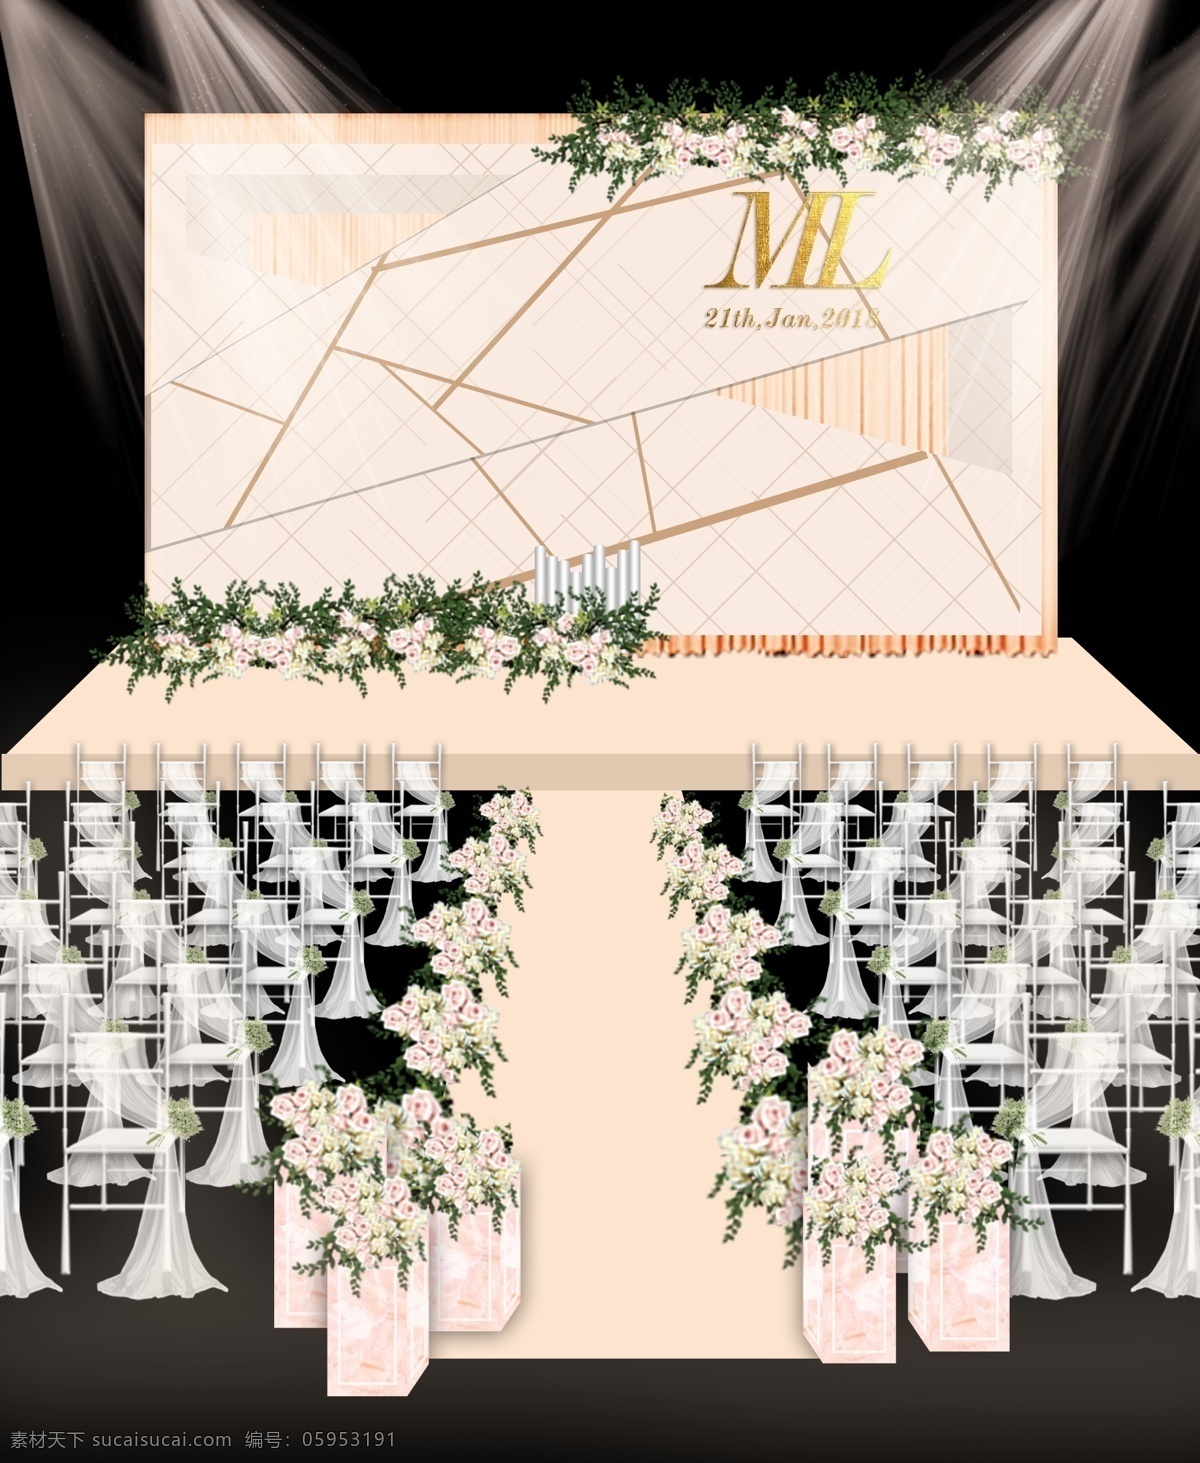 香槟 婚礼 舞台 效果图 仪式 区 线条背景 粉色花艺 竹节椅 婚礼效果图